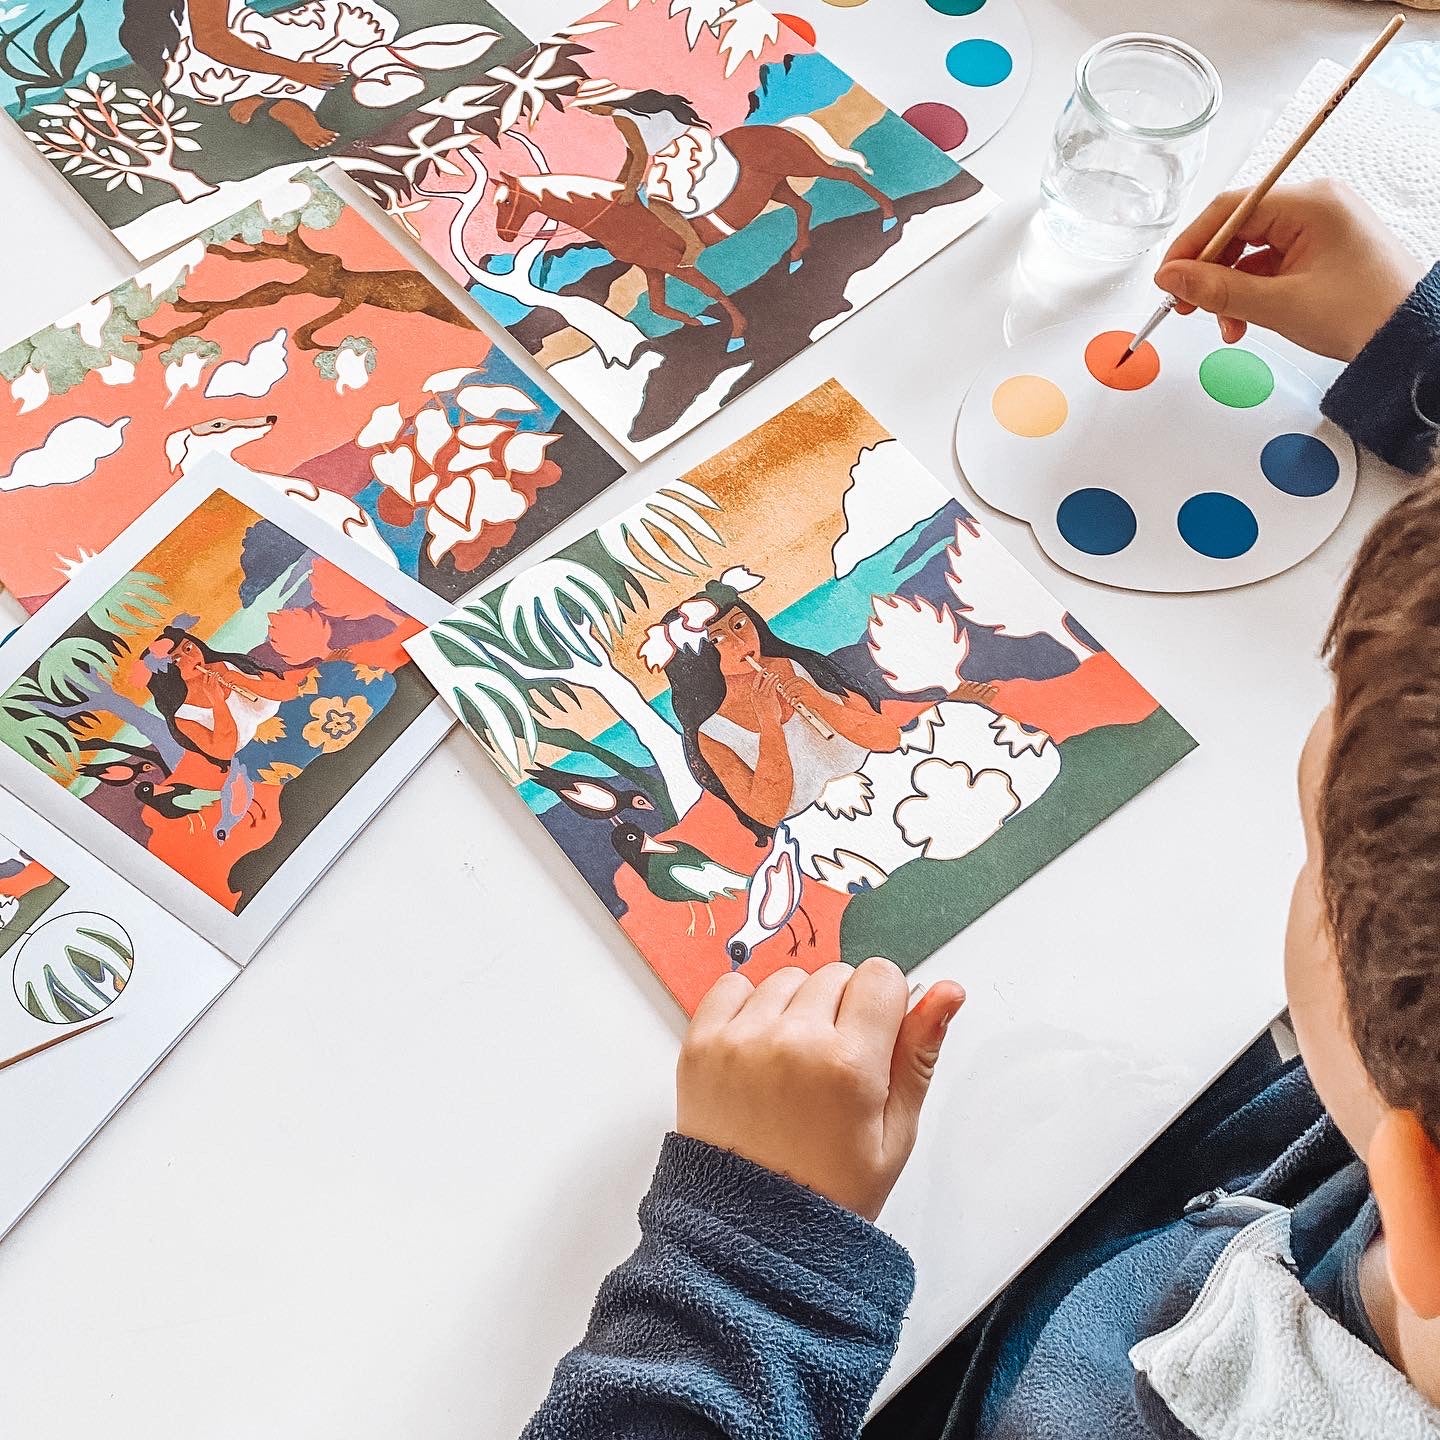 Djeco: zestaw artystyczny inspiracje Polinezja Inspired by Paul Gauguin